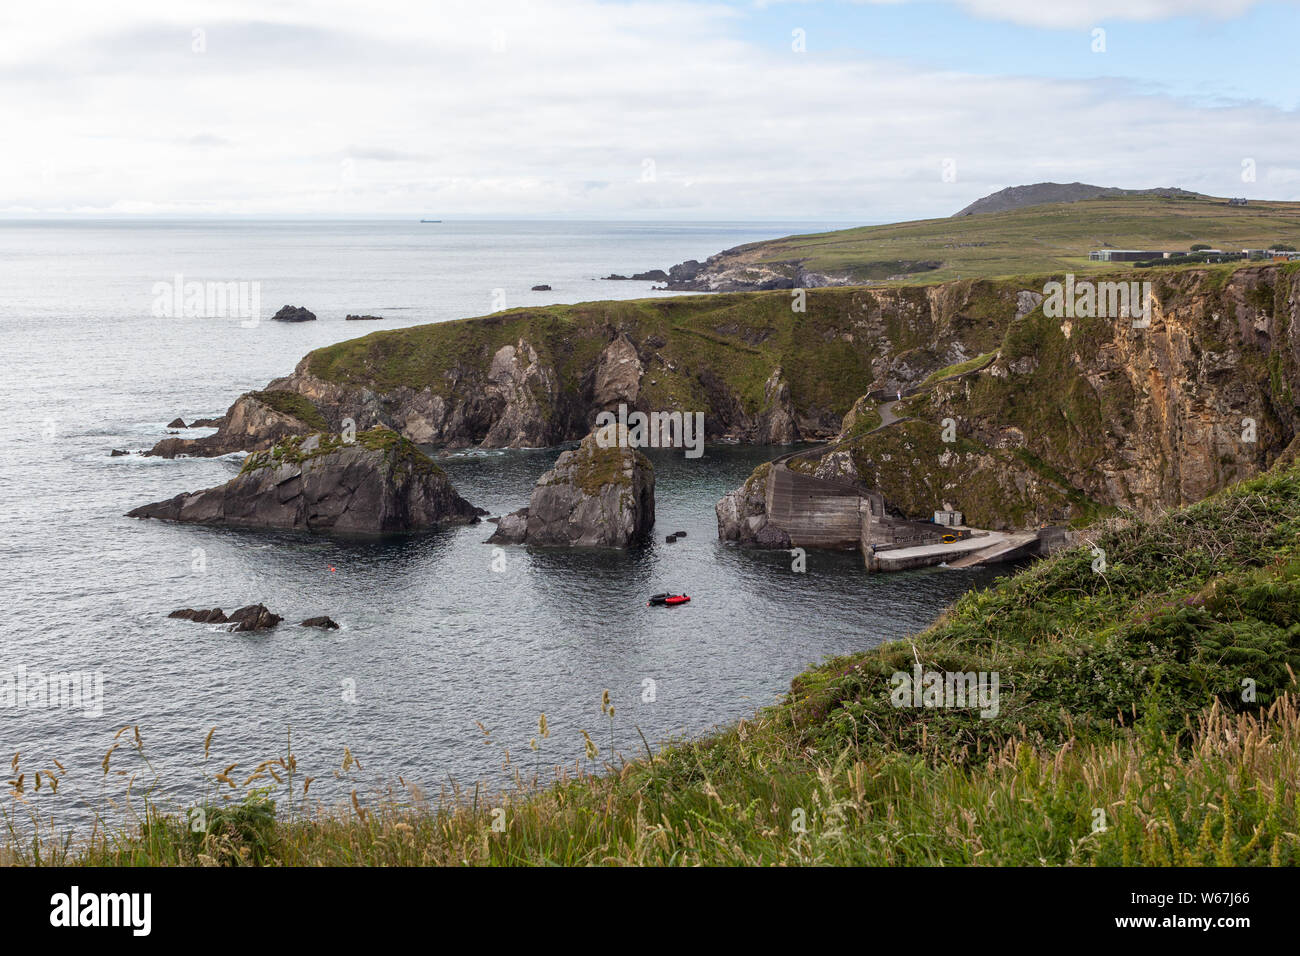 In Dunquin Pier auf der Halbinsel Dingle in der Grafschaft Kerry, Irland - Ausgangspunkt für die Blasket Islands Stockfoto